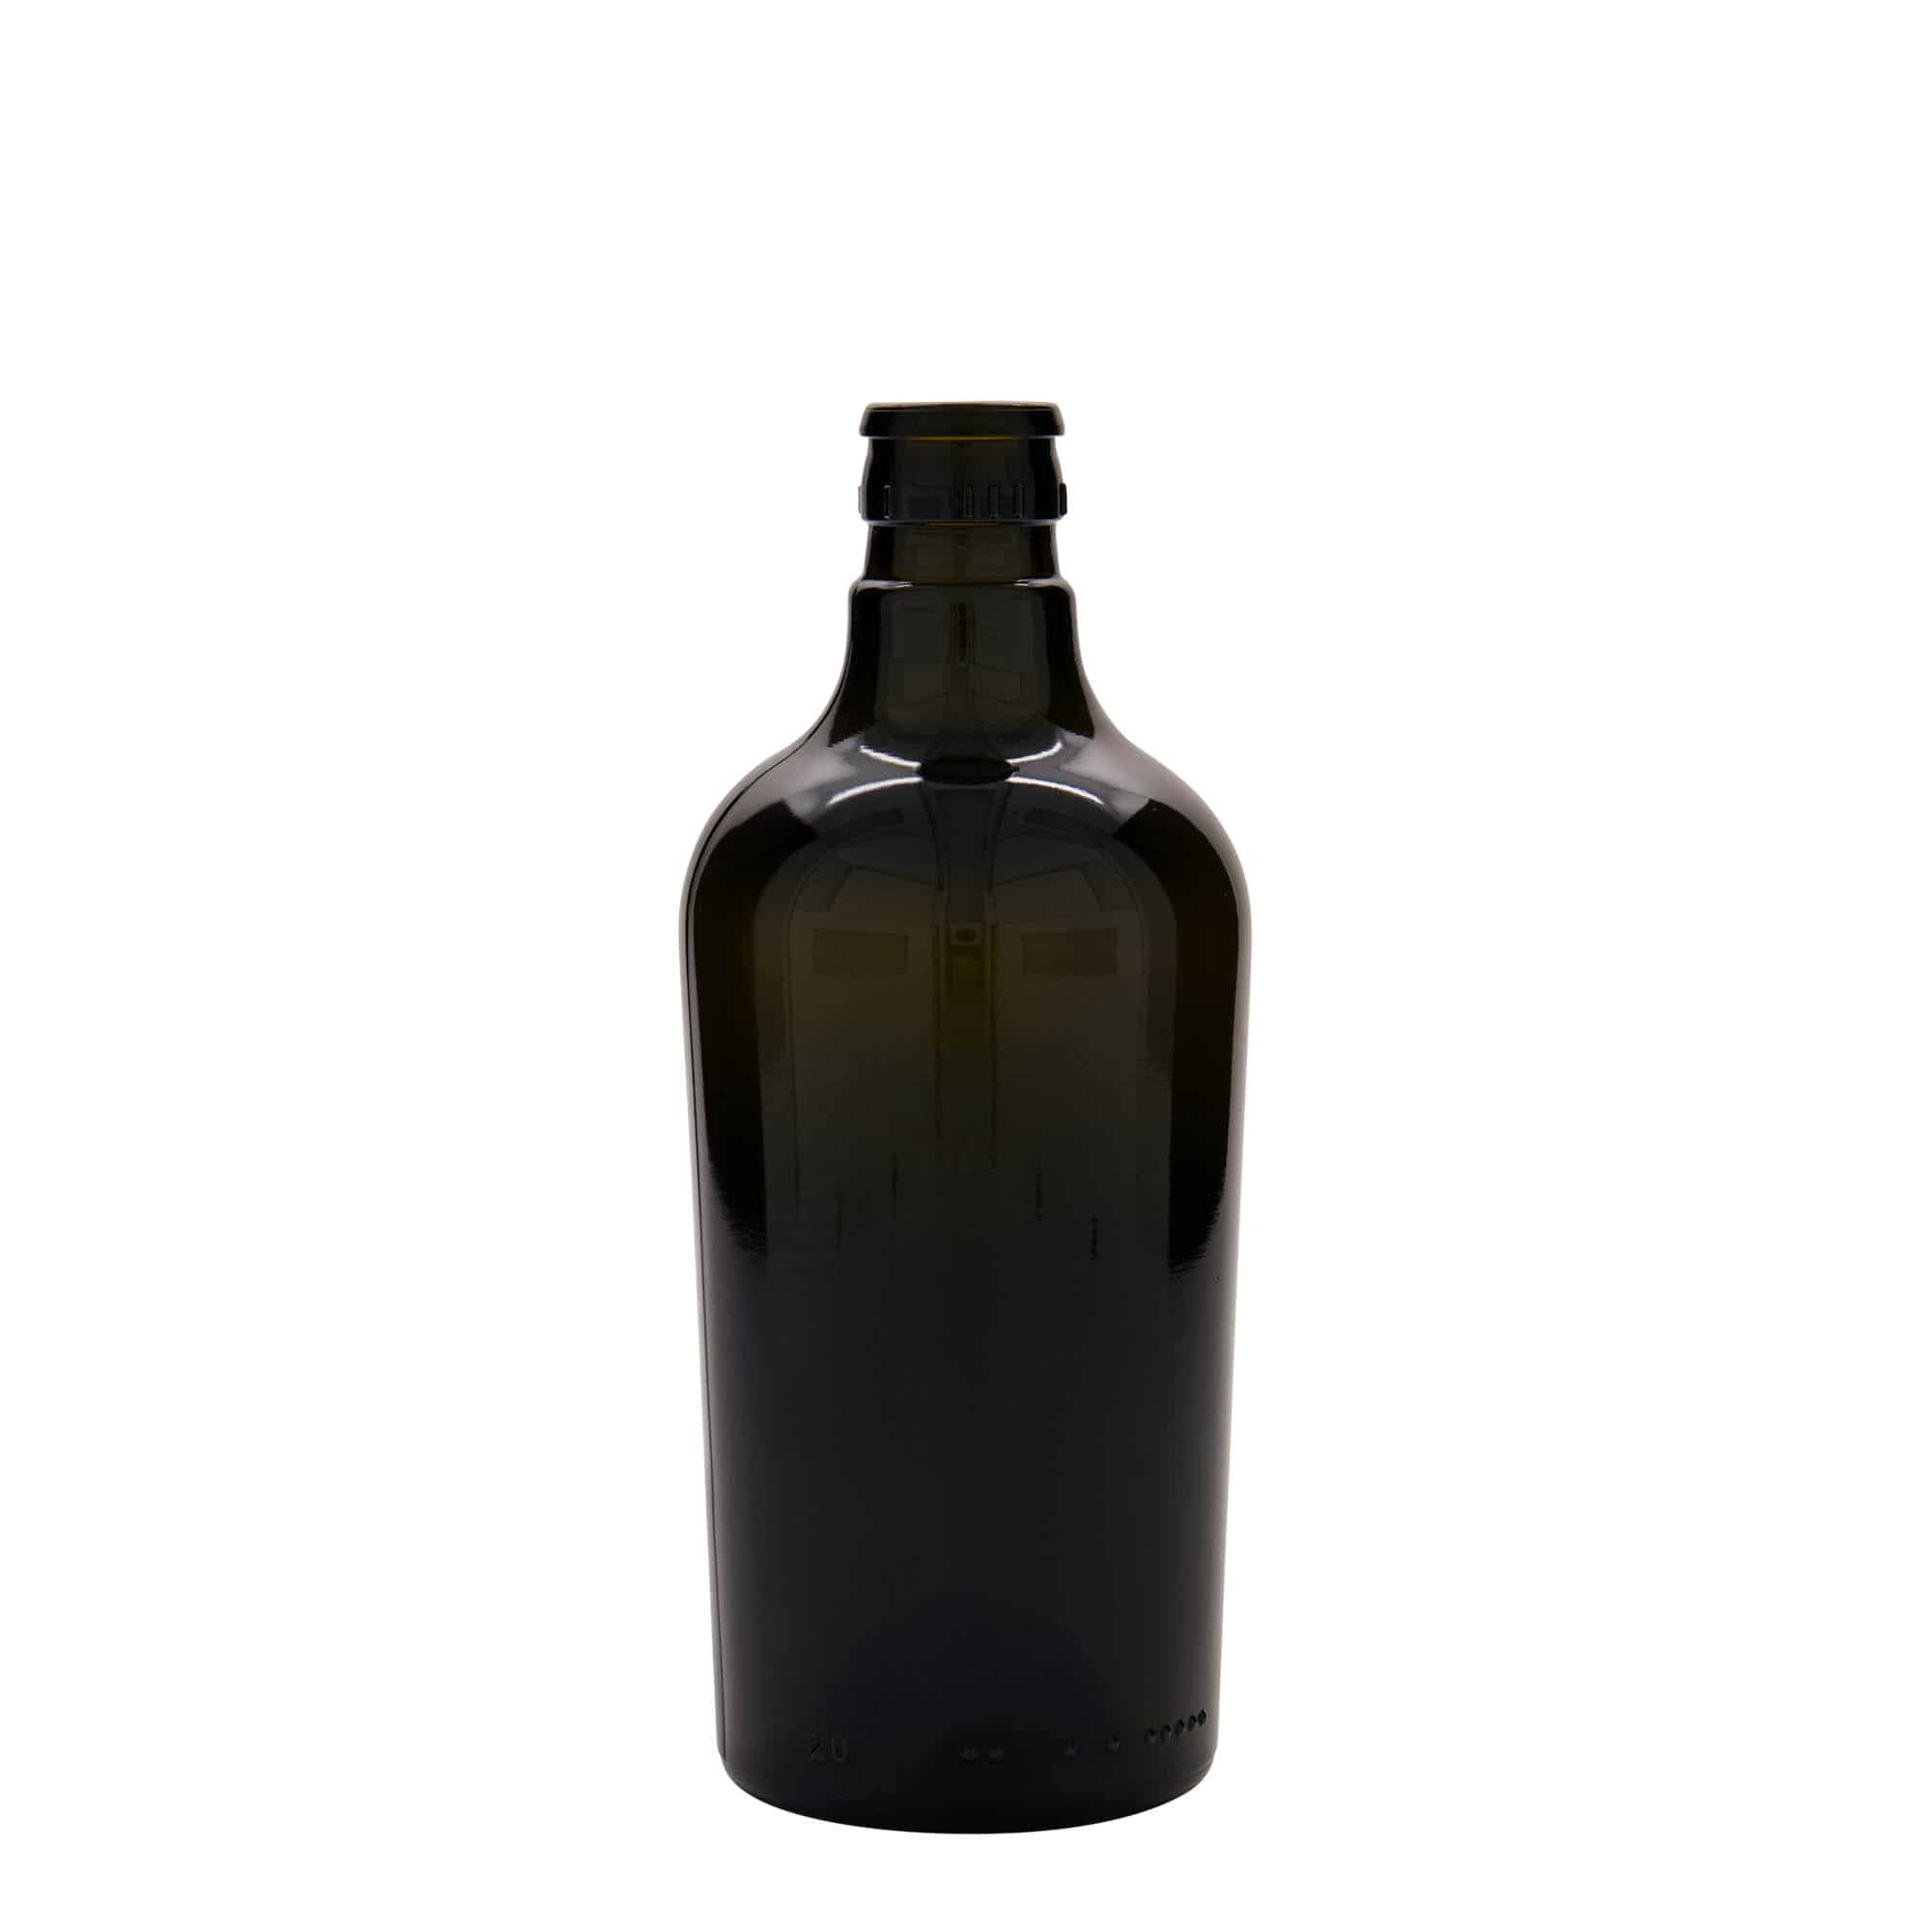 Lahev na ocet/olej 500 ml 'Oleum', sklo, starožitná zelená, ústí: DOP